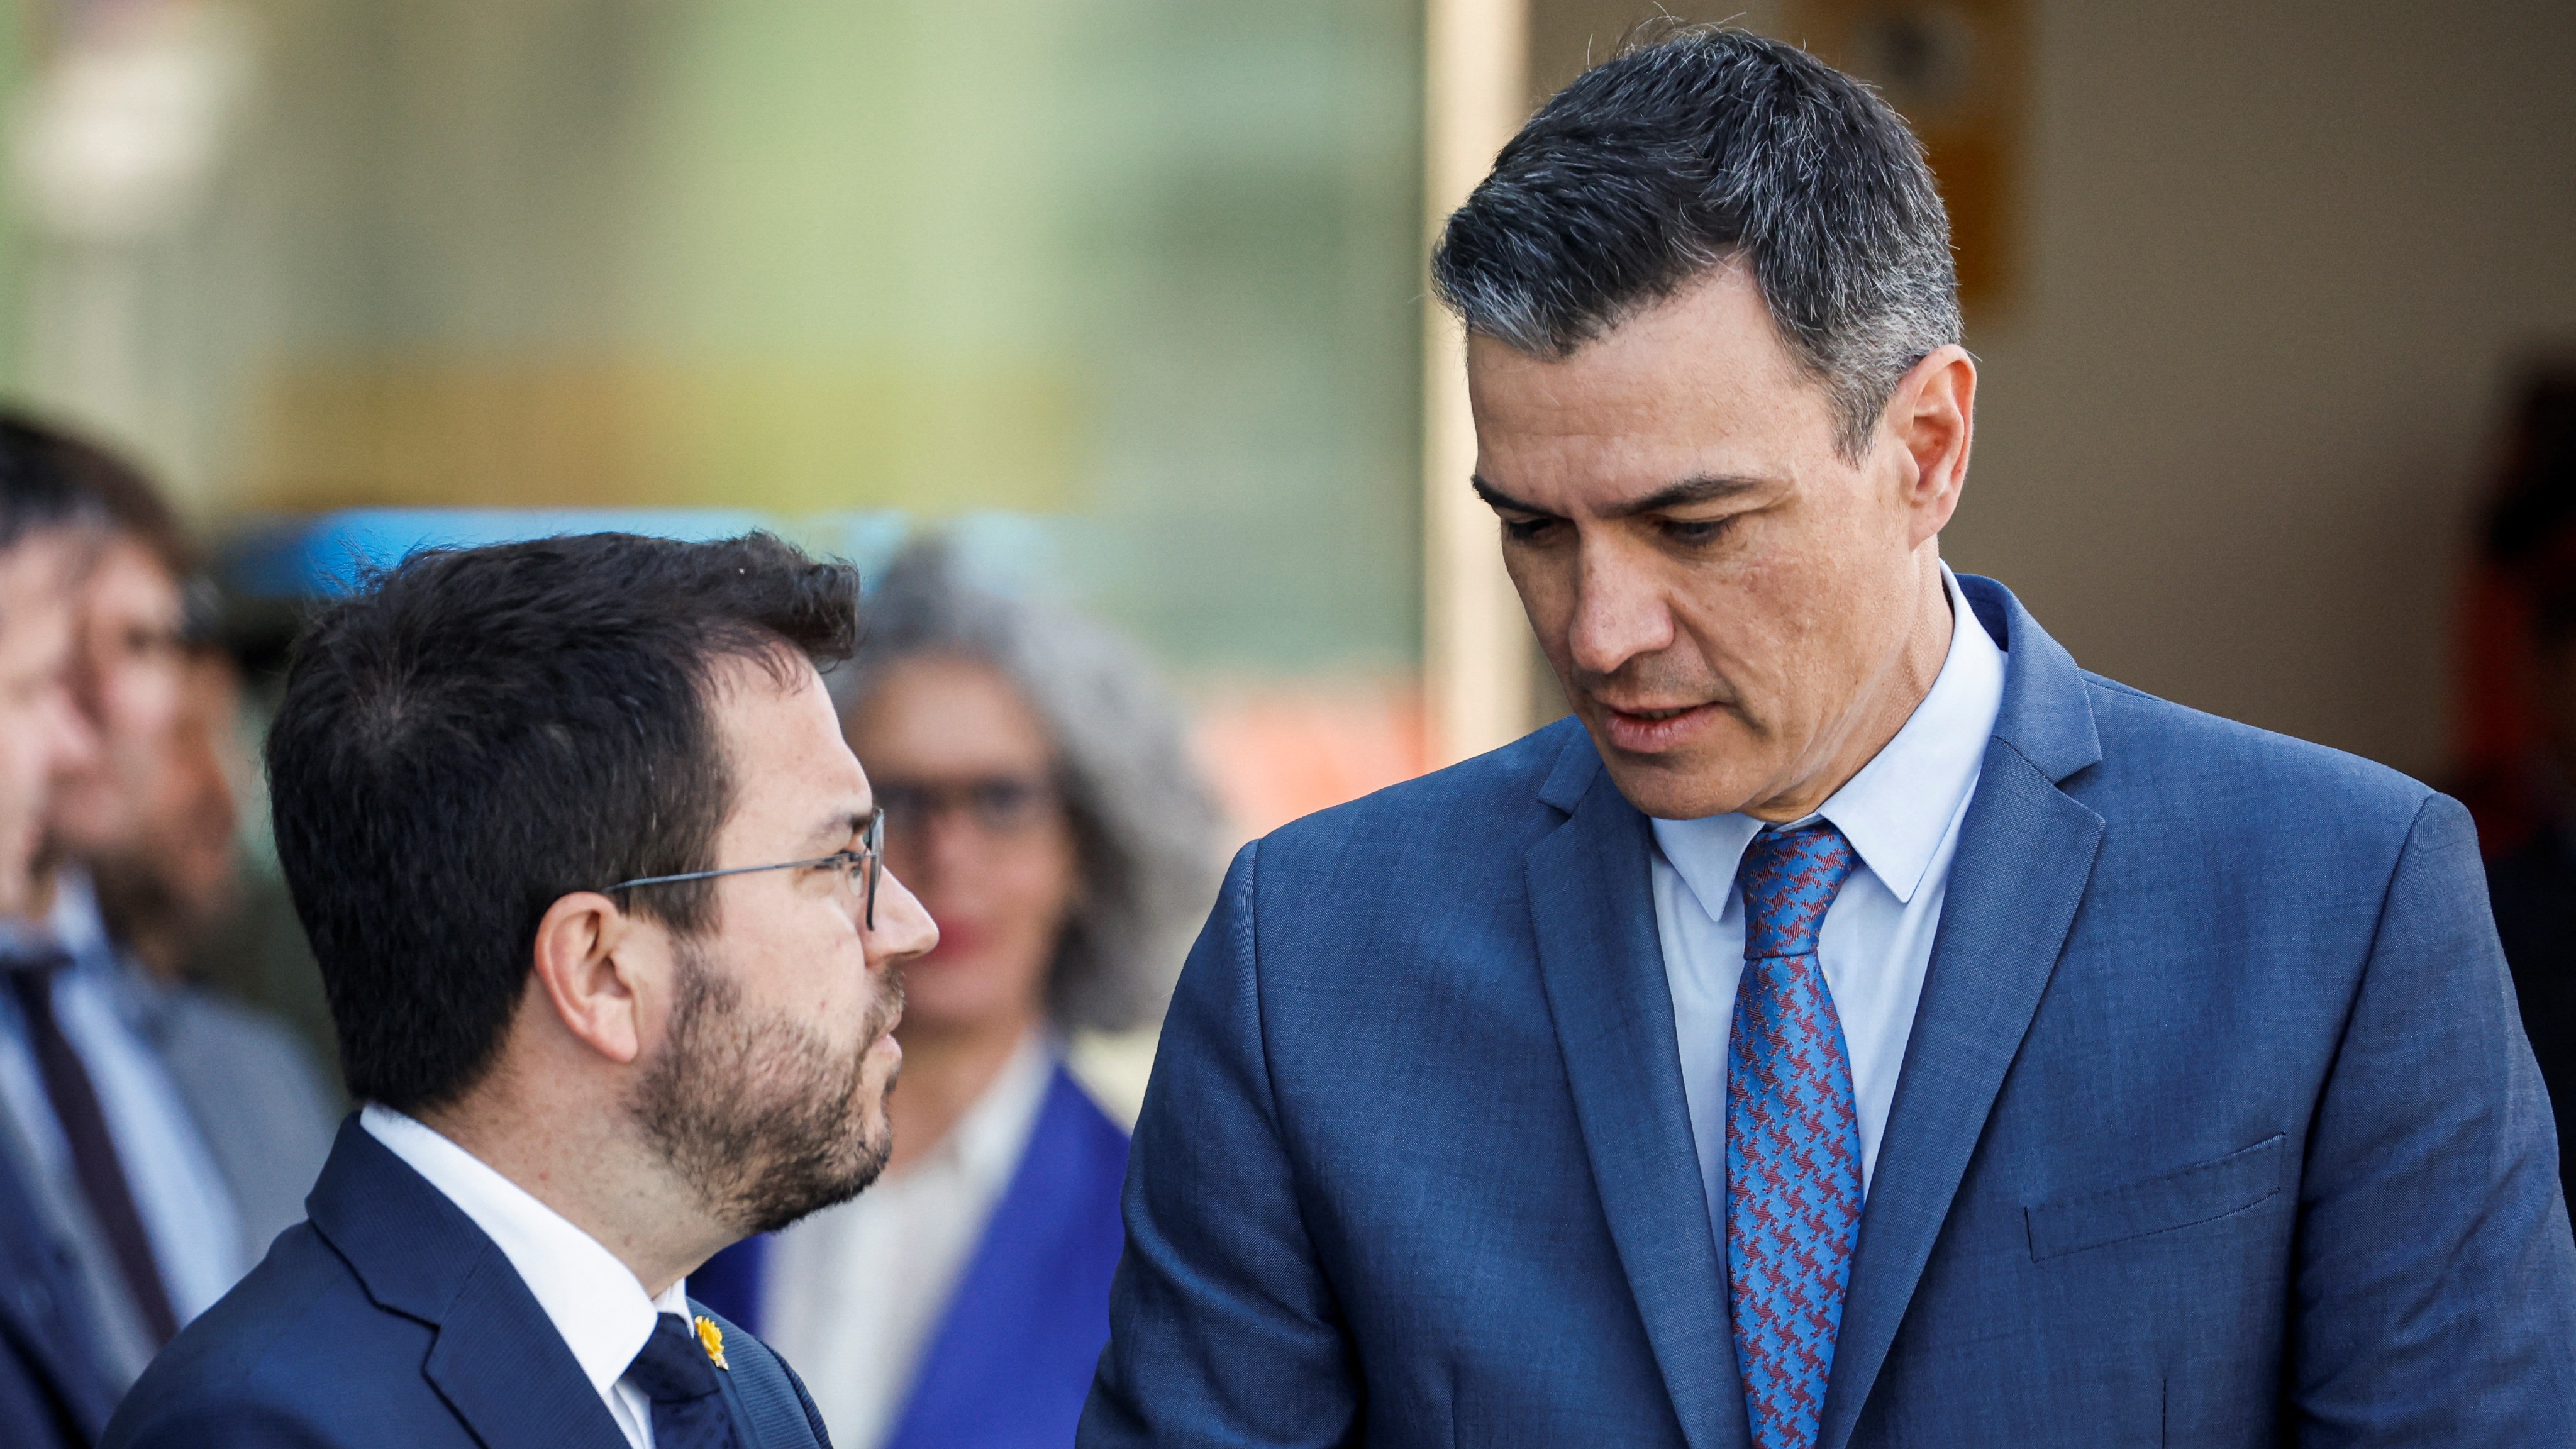 Ir al Video Sánchez y Aragonès se emplazan a una reunión para resolver una situación "muy grave" tras el escándalo del espionaje